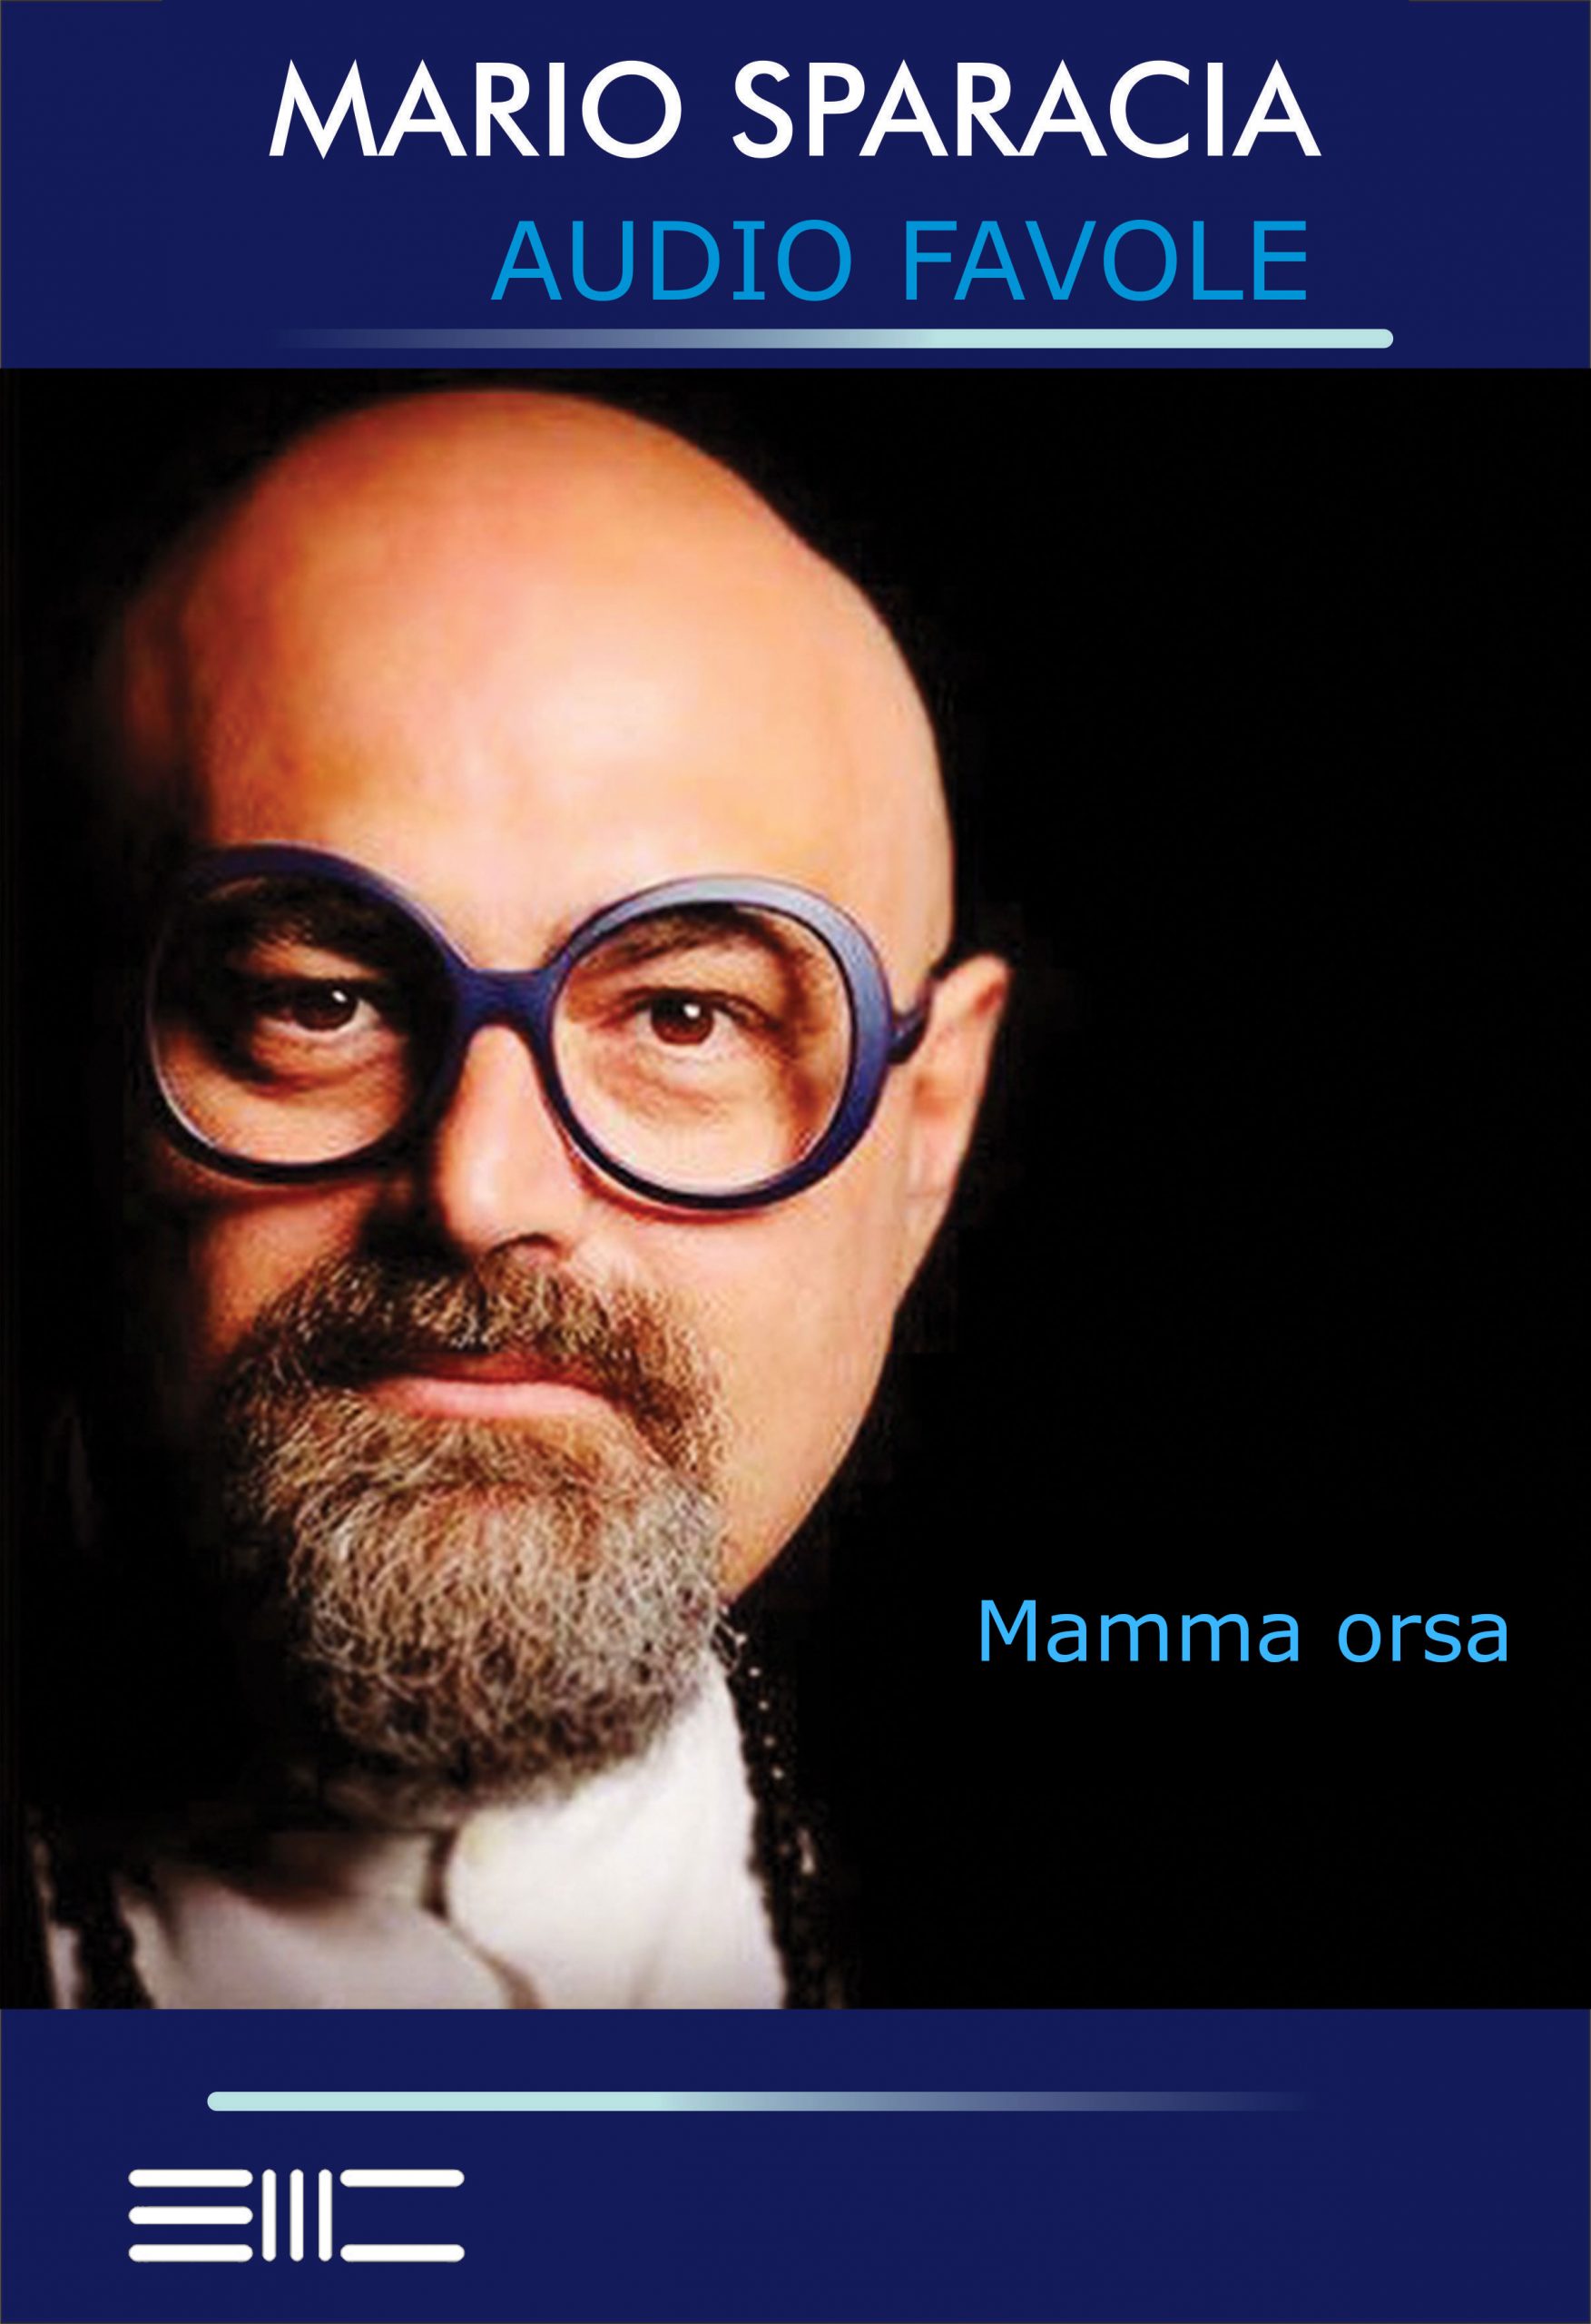 04 Mamma orsa di Mario Sparacia